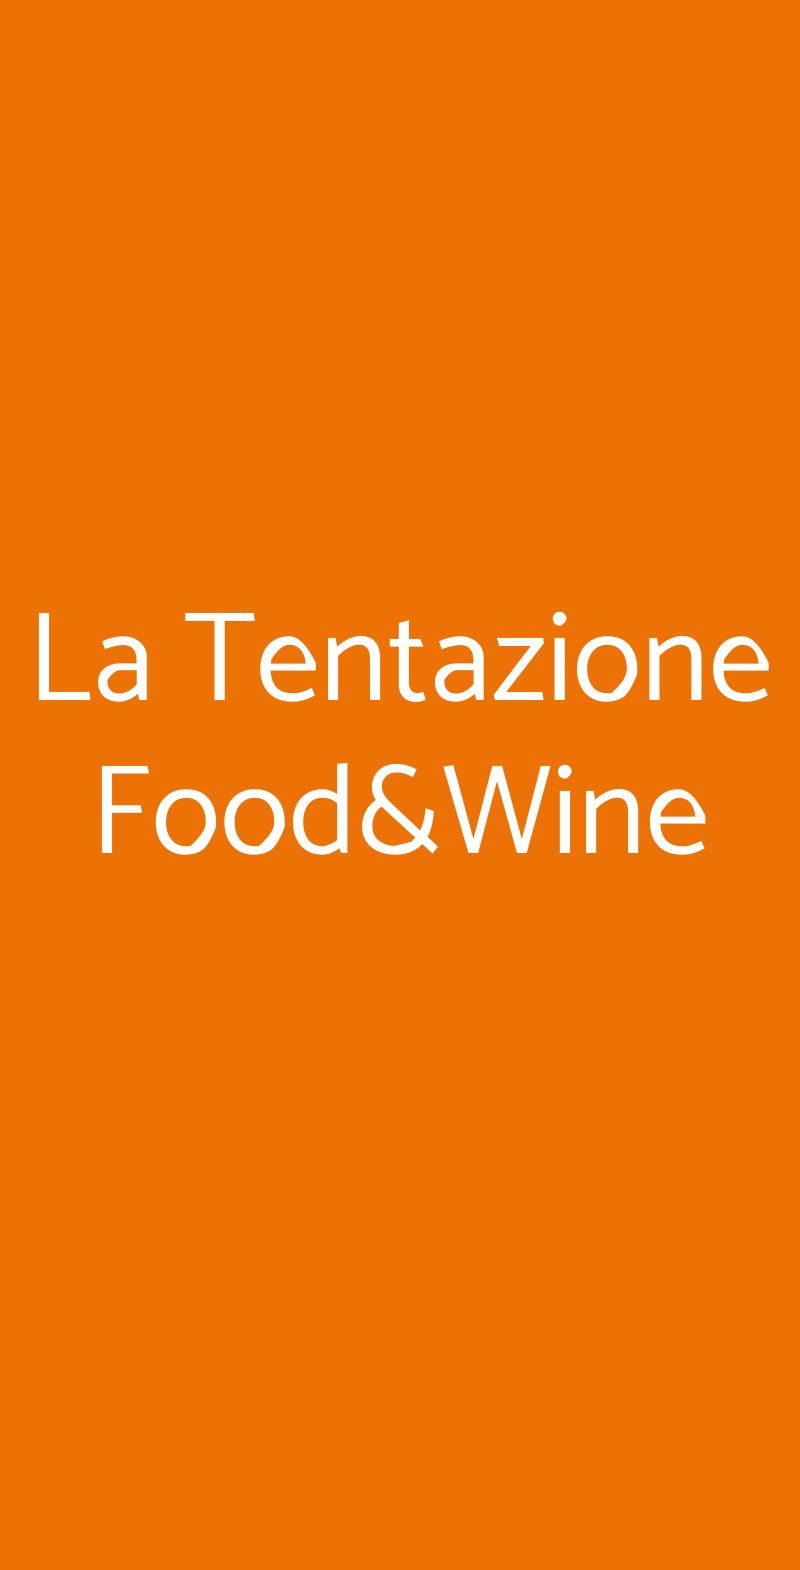 La Tentazione Food&Wine Viareggio menù 1 pagina